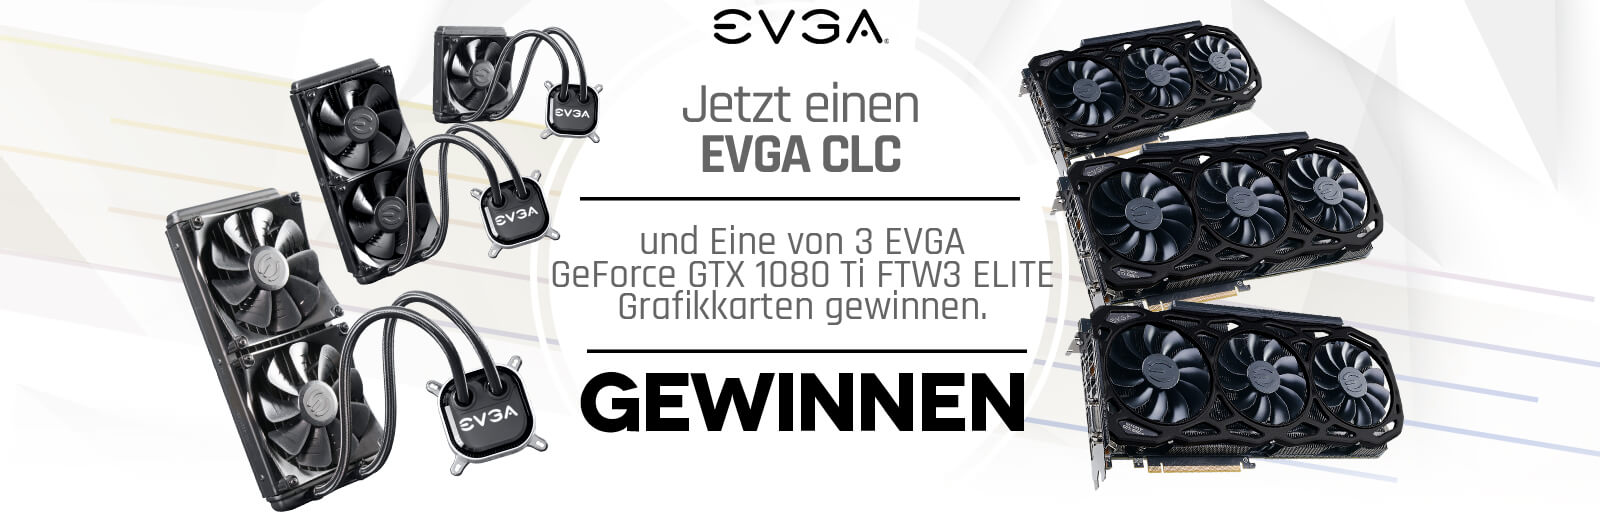 Jetzt einen EVGA CLC Kühler kaufen und Eine von 3 EVGA GeForce GTX 1080 Ti FTW3 ELITE Grafikkarten gewinnen.